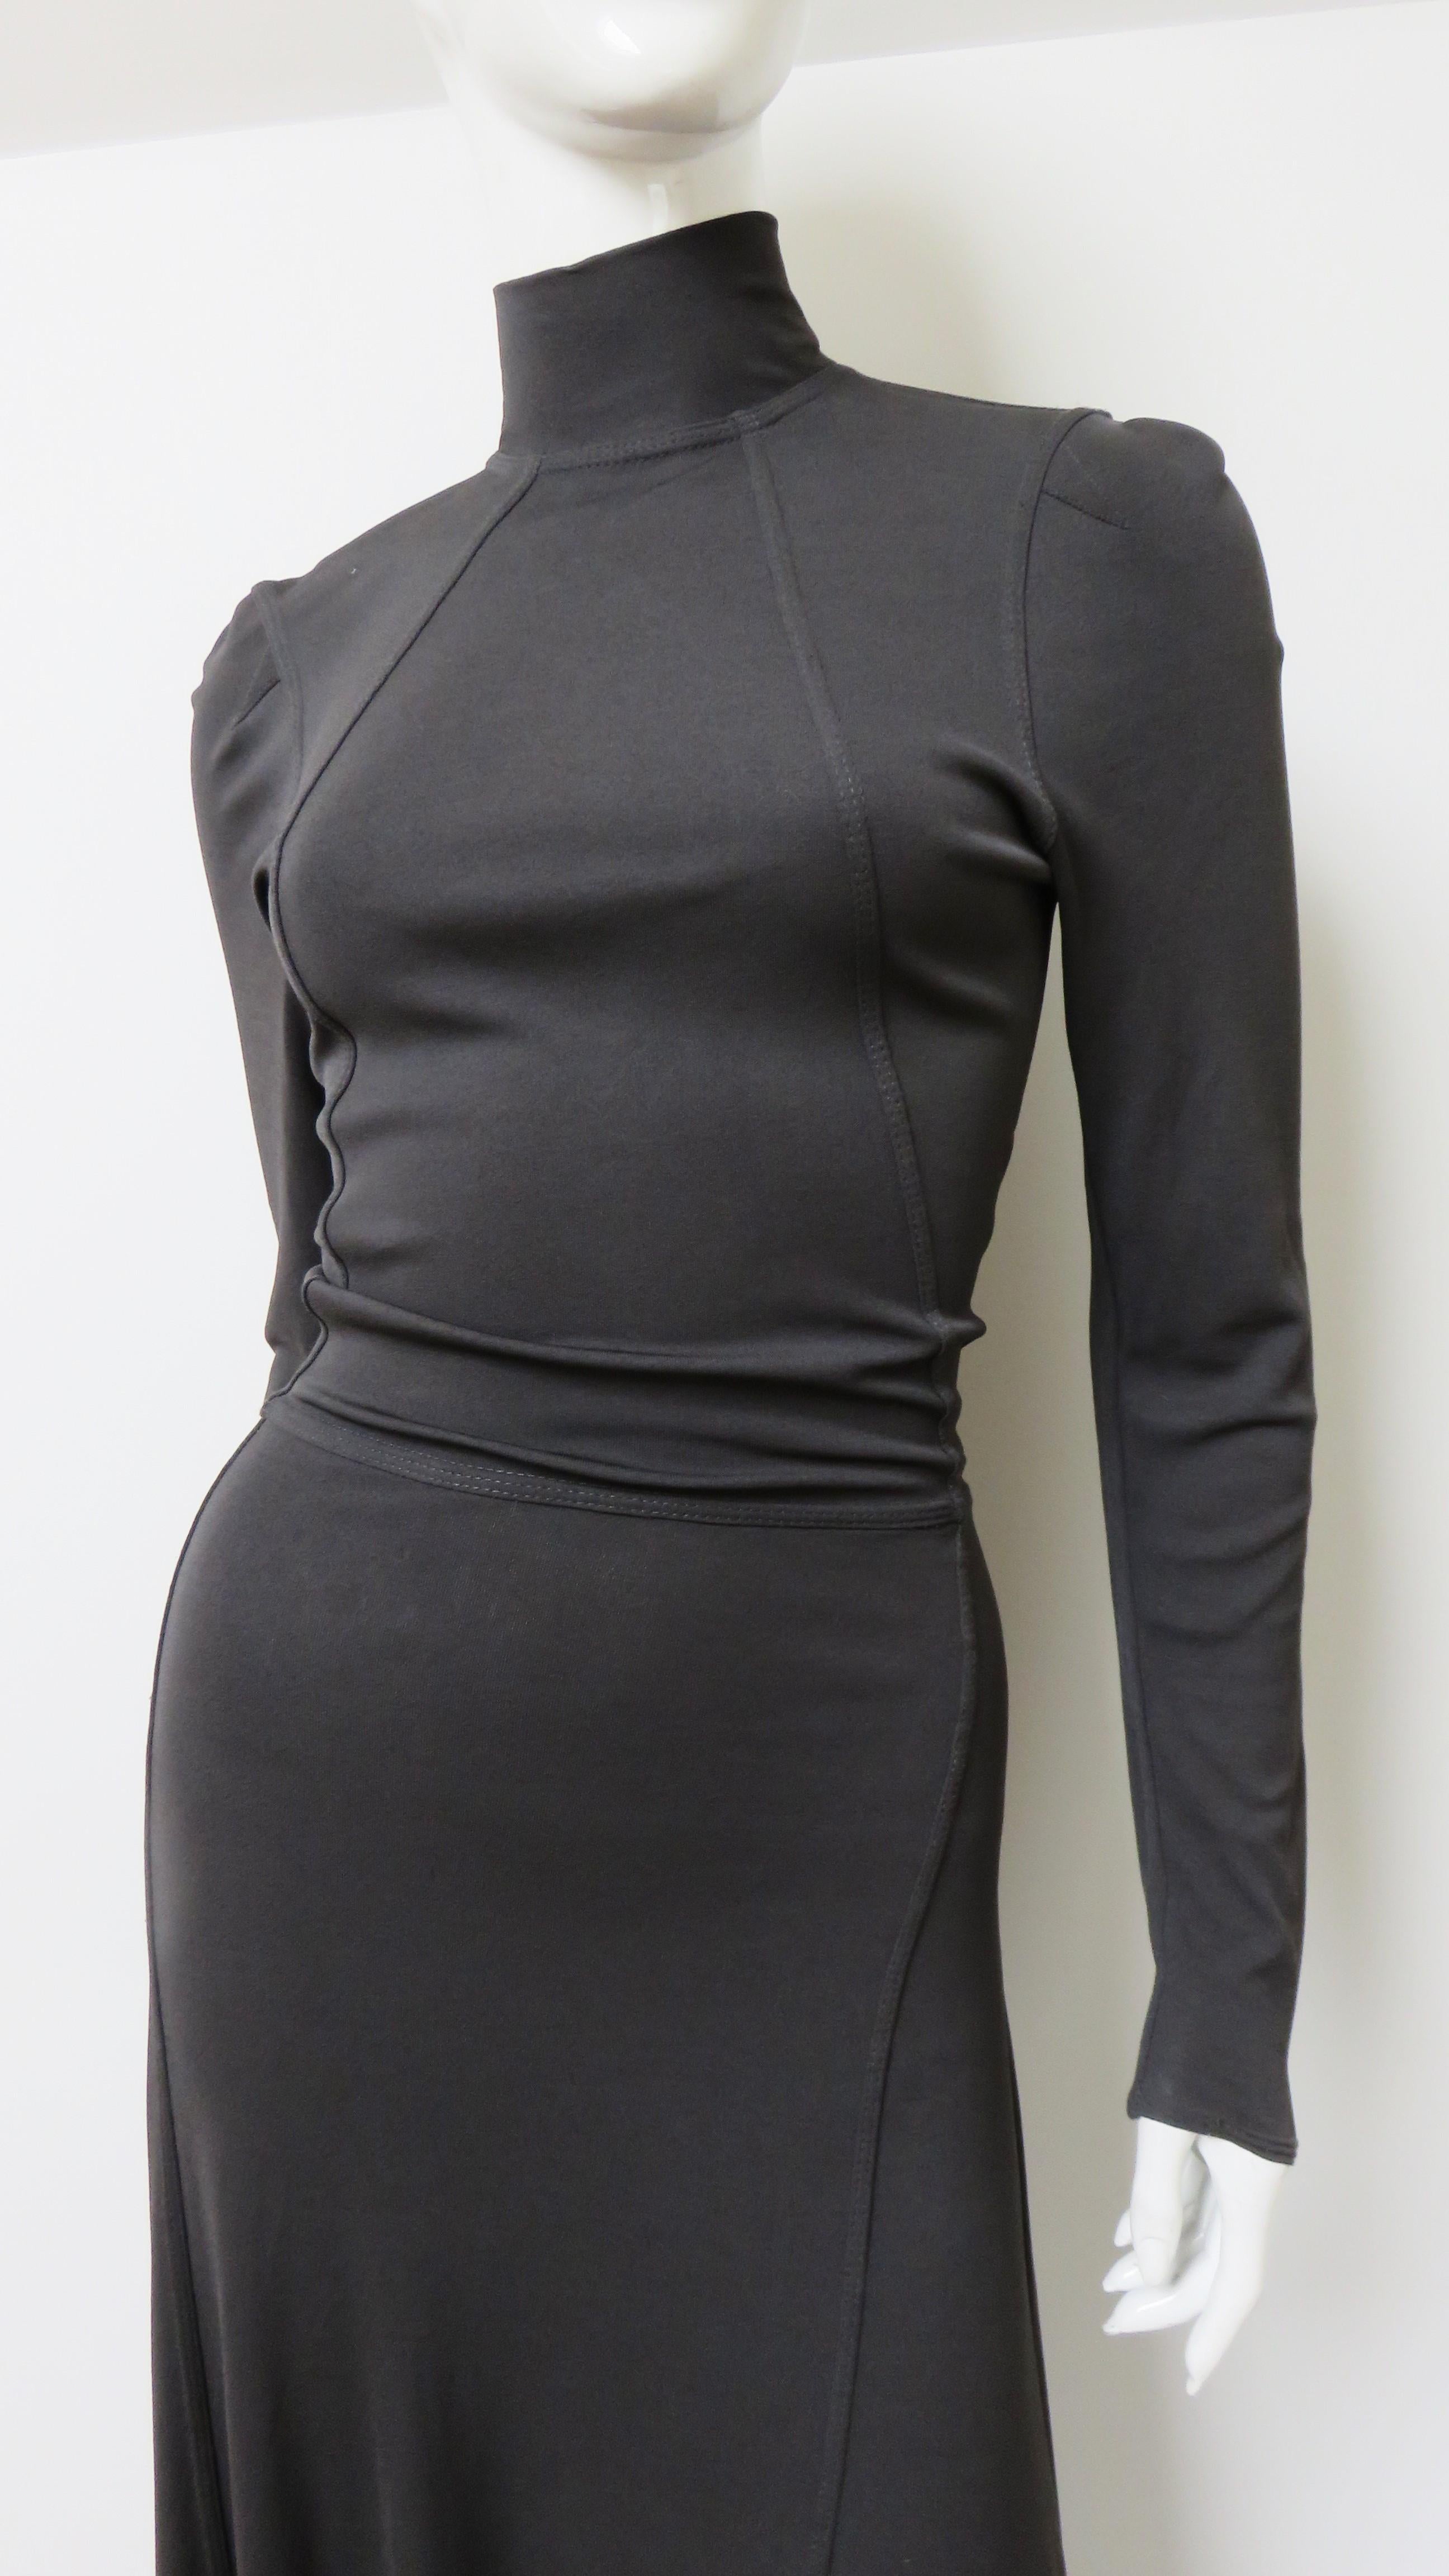 Black Jean Paul Gaultier Grey Zipper Dress 1990s